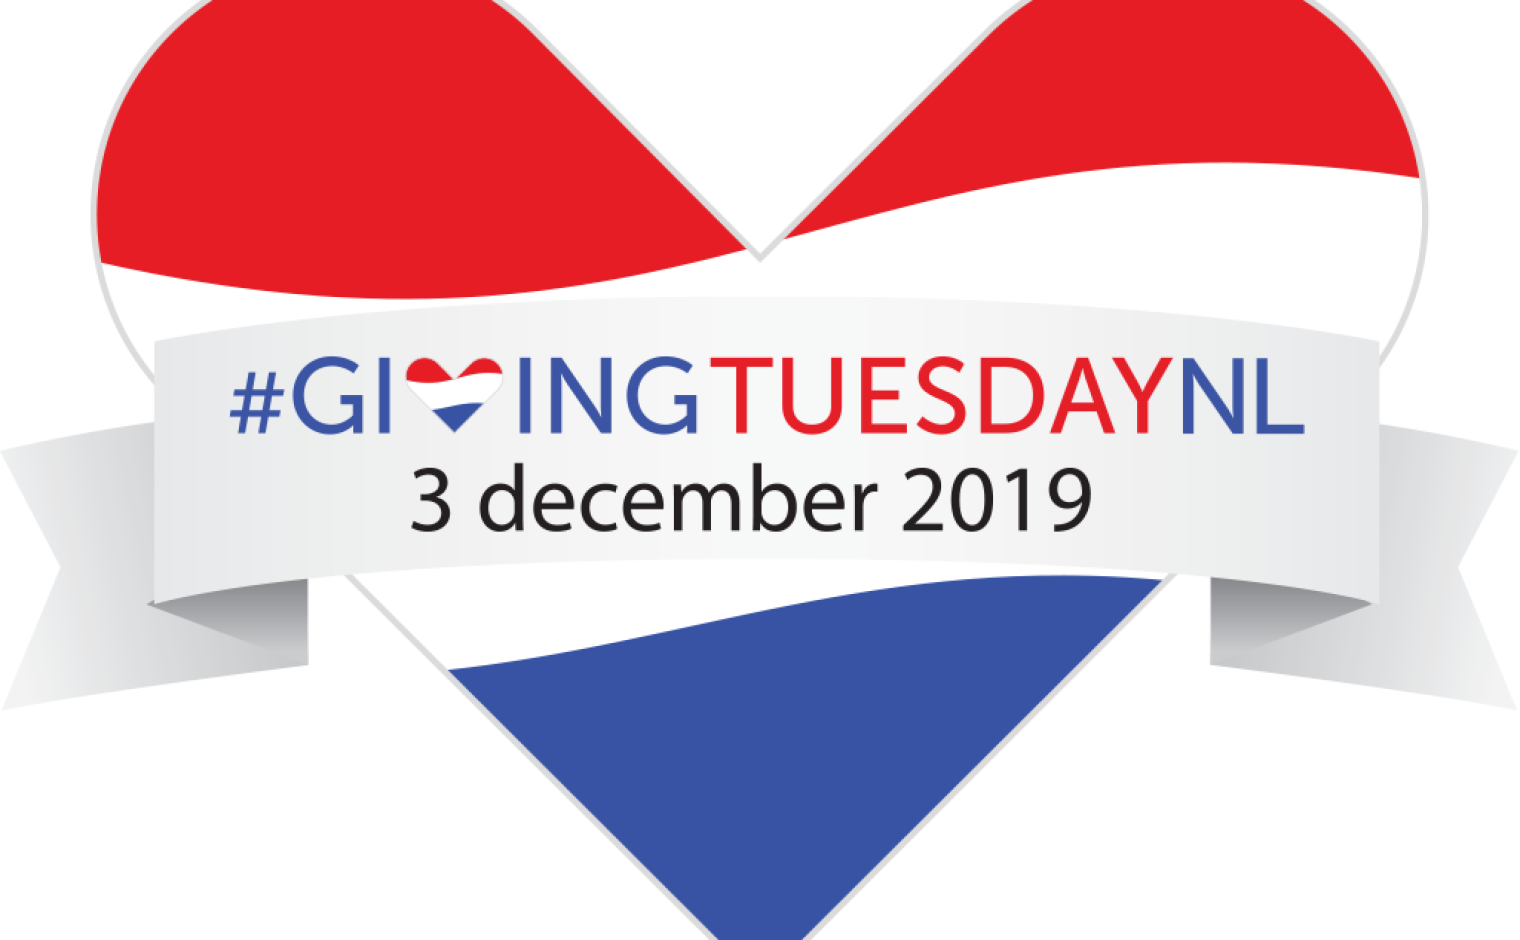 Hartje van de Nederlandse vlag met daarin de tekst #GivingTuesdayNL 3 december 2019